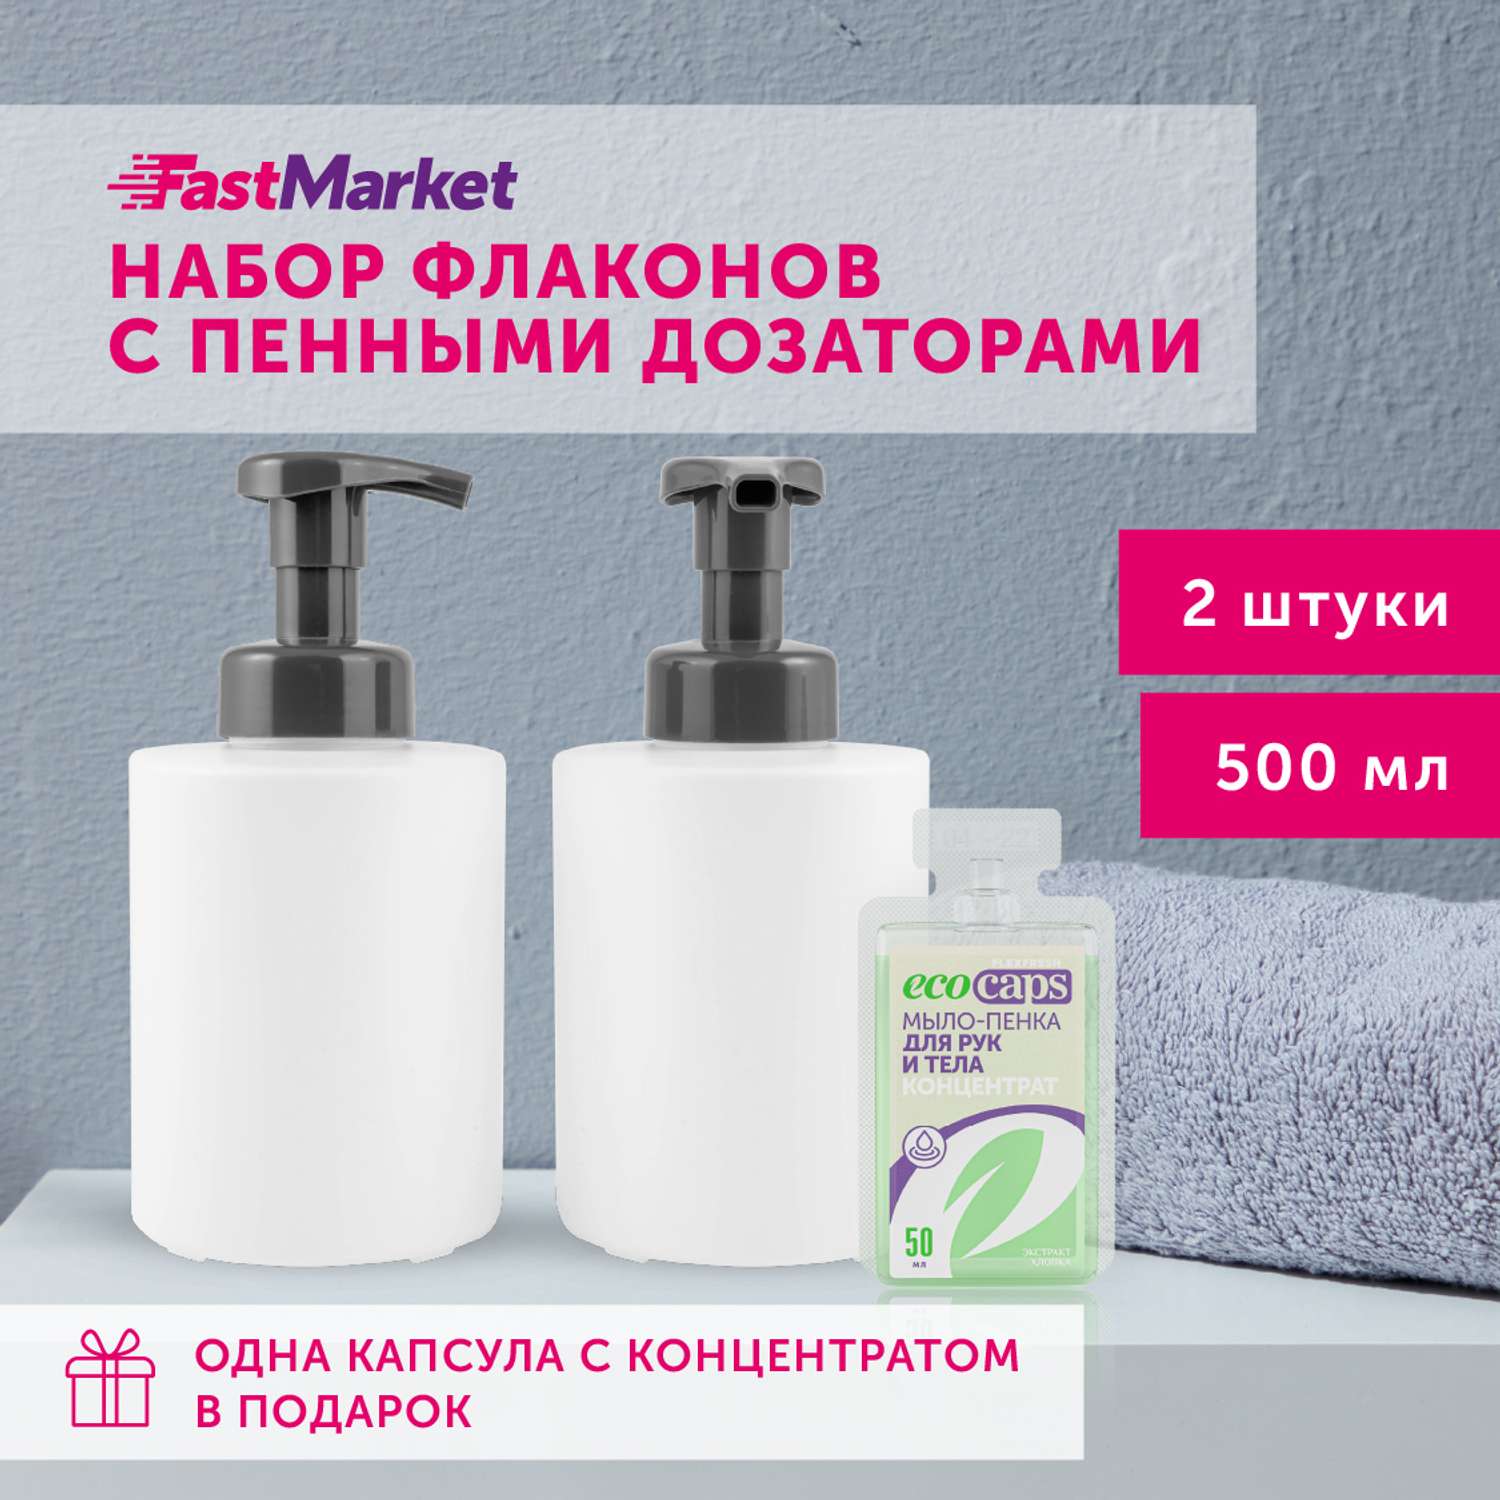 Дозаторы круглые FastMarket для мыла-пенки 2шт по 500 мл - фото 2